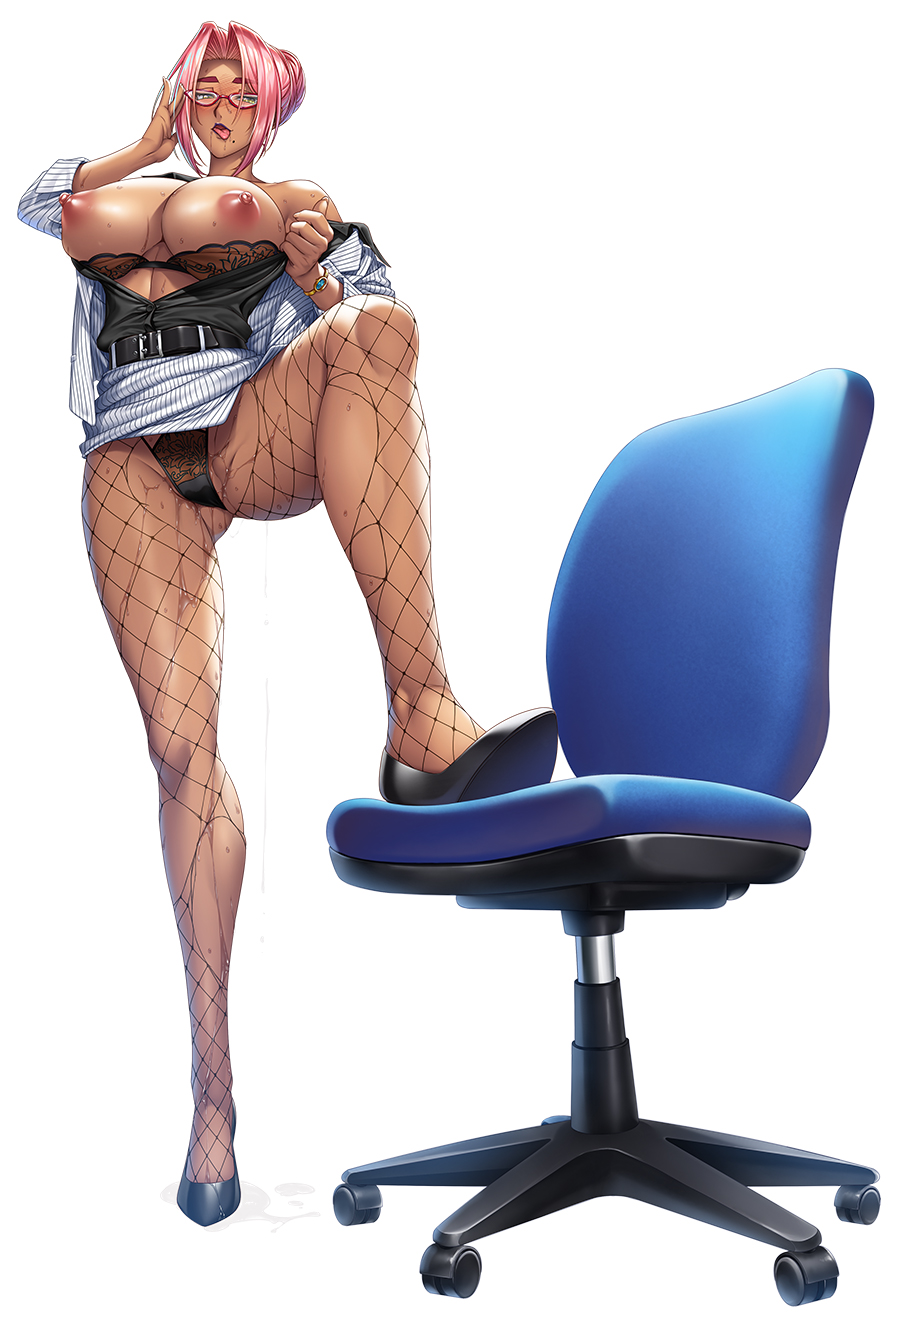 【画像】対魔忍さん、仕事中に全裸でドデカ椅子(キャスター付き)に足乗せ\n_1